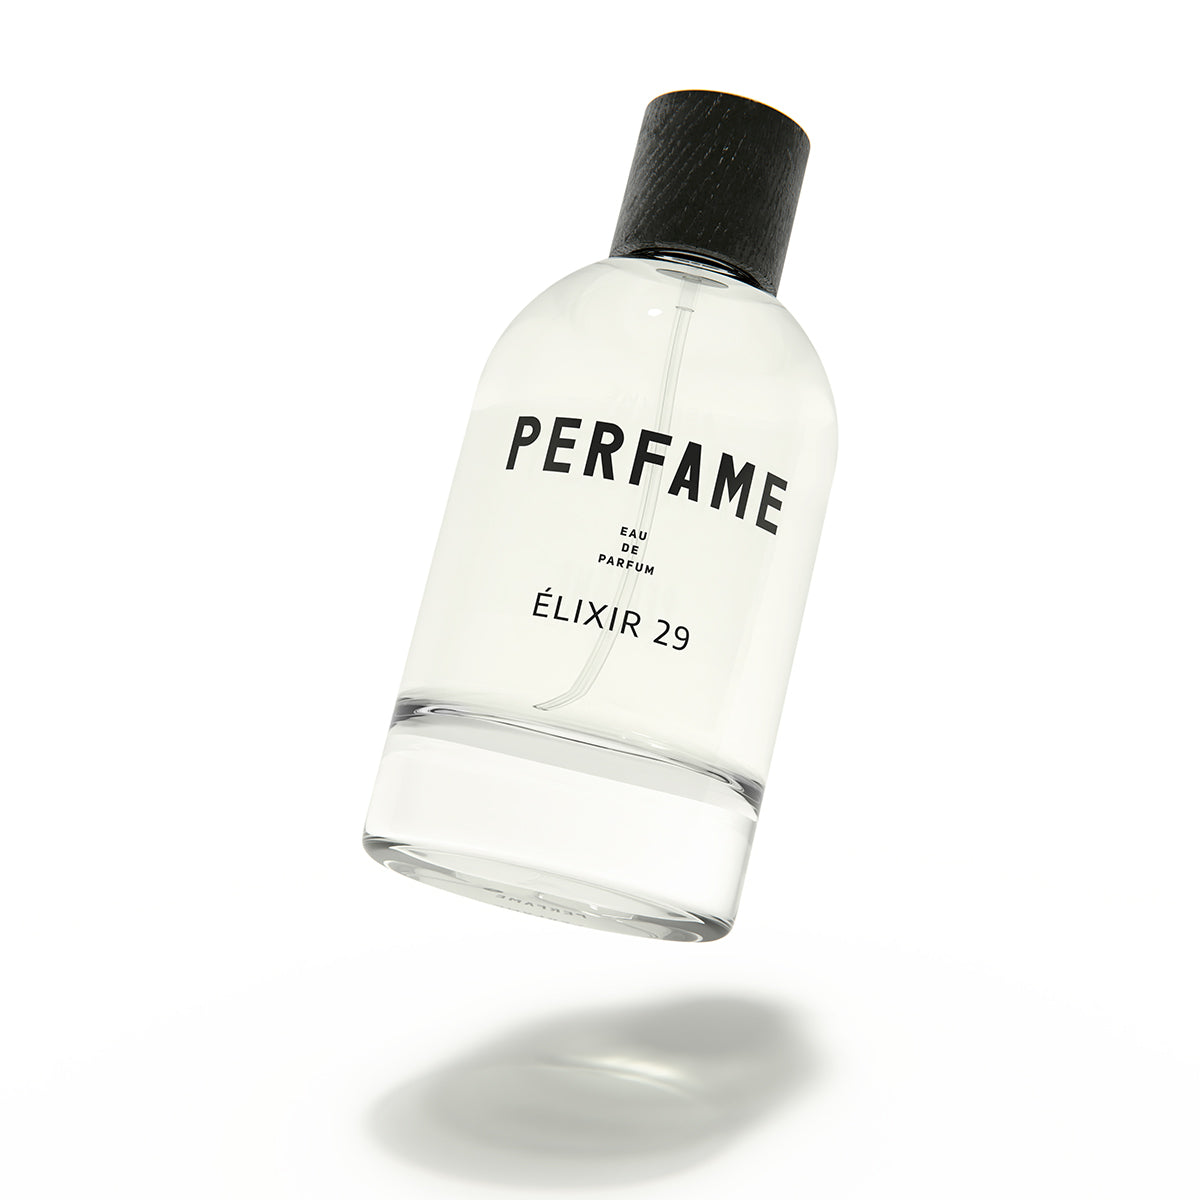 Perfume Parlour, Cheap Perfumes, Clones, Replicas